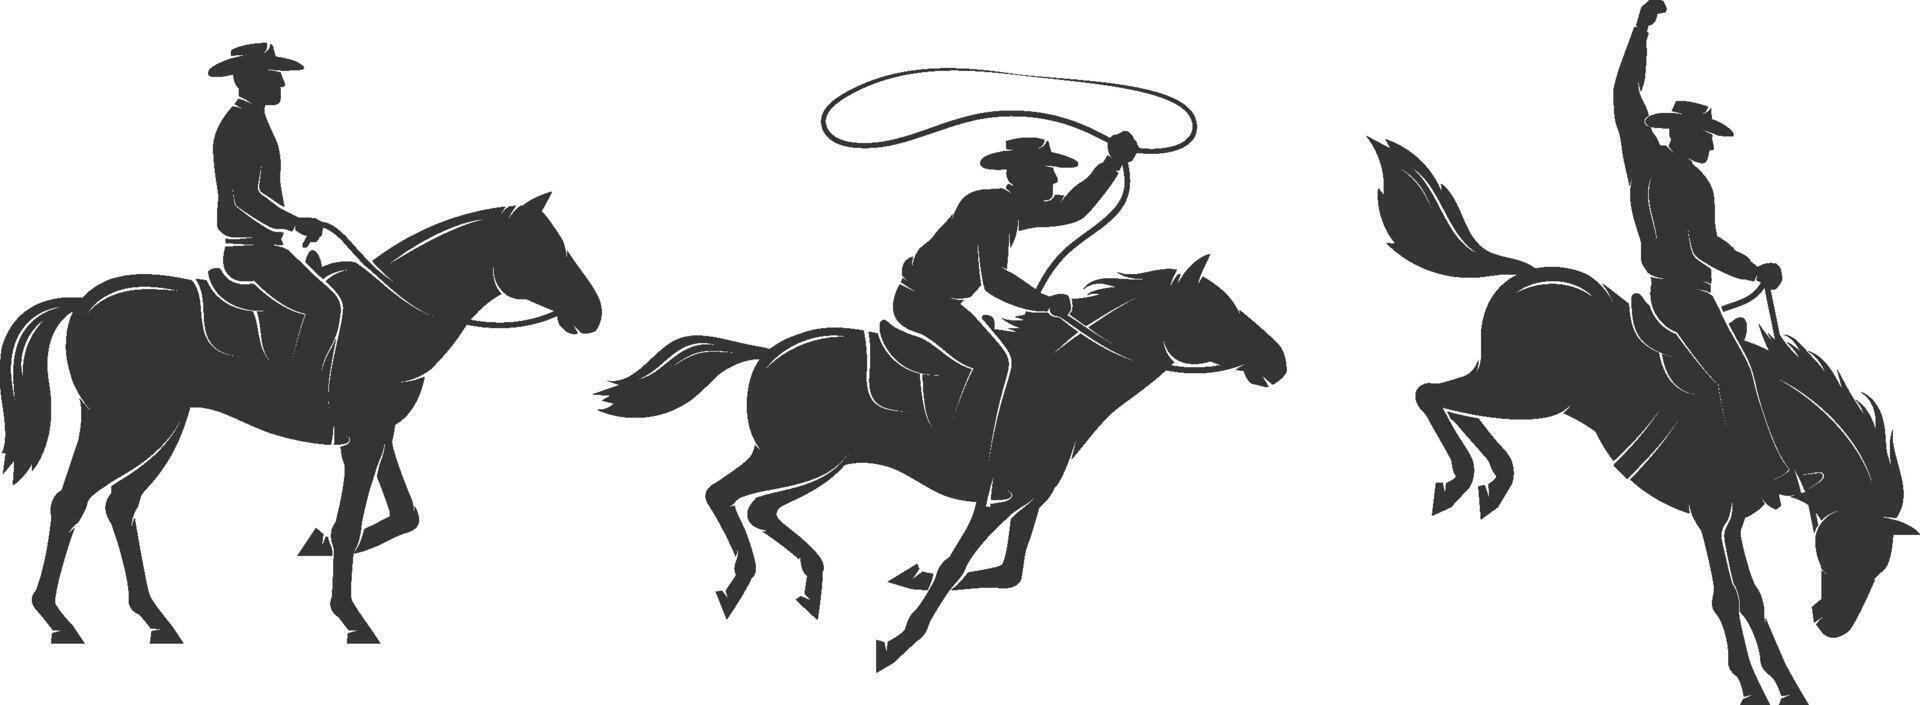 Cowboy rides a horse and throws a lasso vector